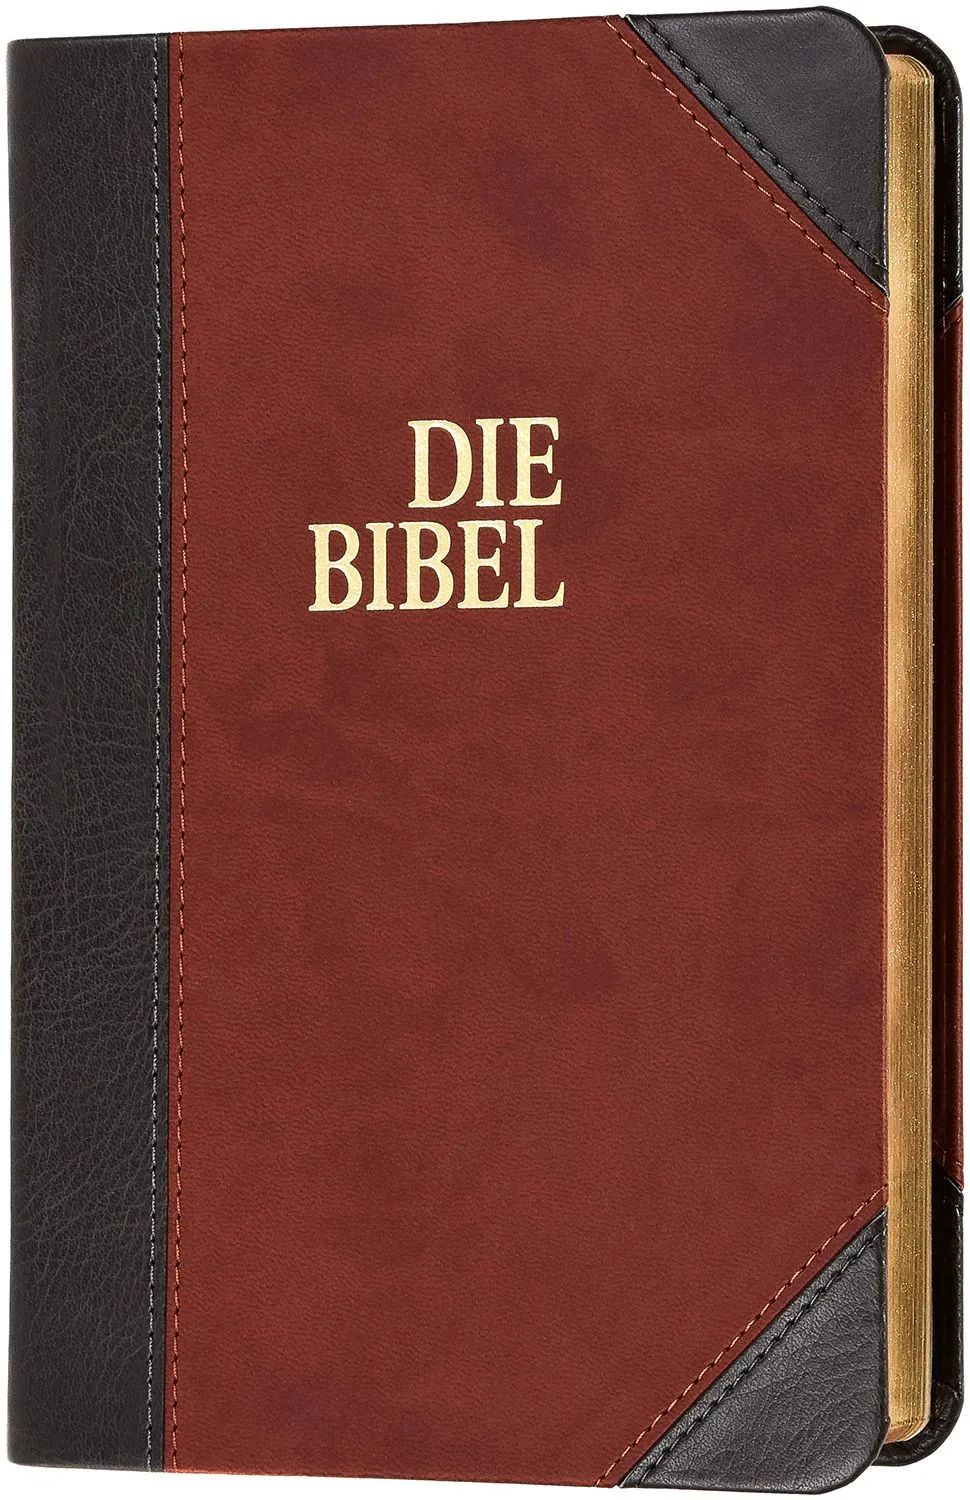 Schlachter Bibel 2000 - Taschenausgabe mit Parallelstellen Angabe - Zweifarbig Grau-braun - Goldrand